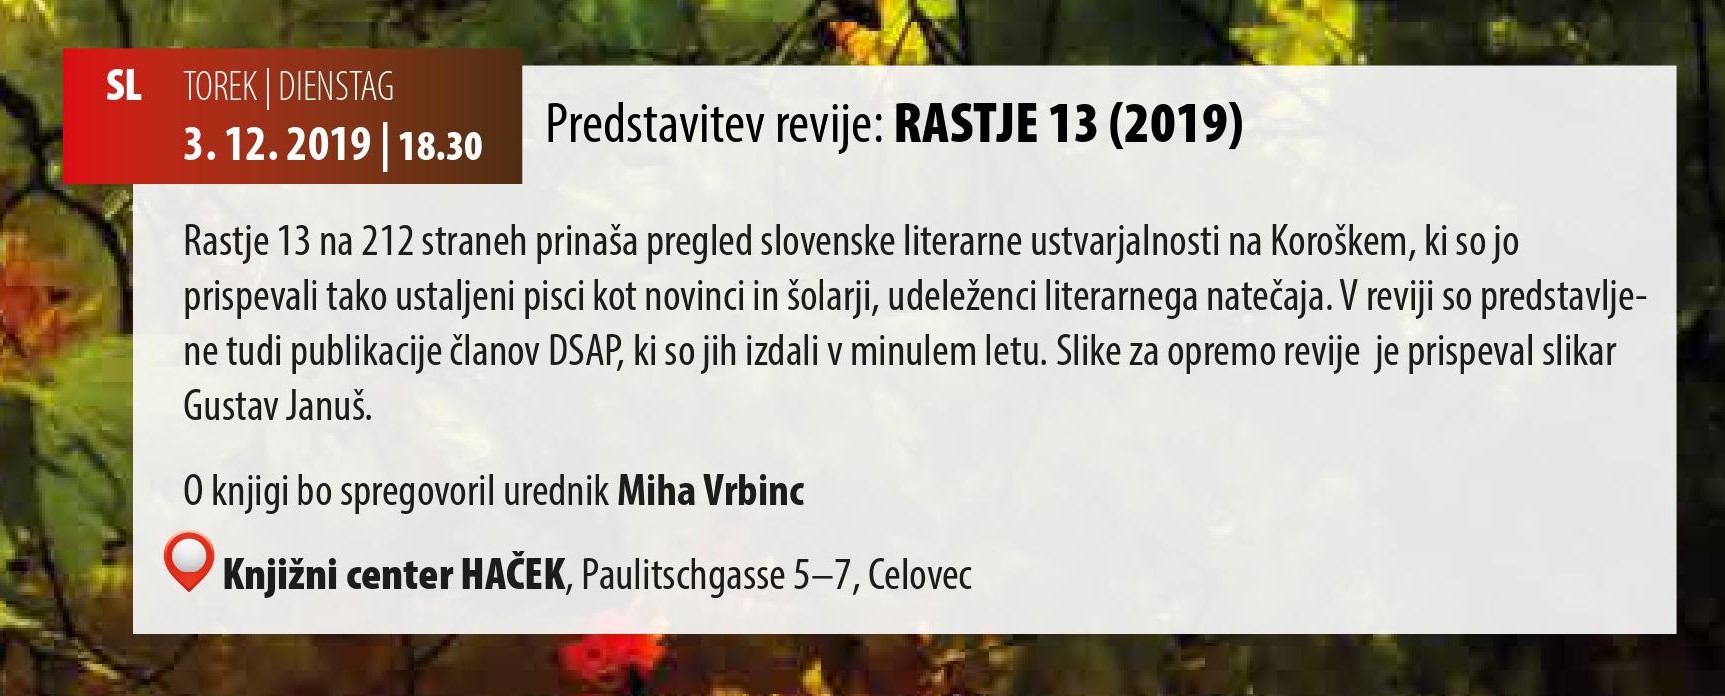 Rastje 13 (Uredil: Miha Vrbinc, izdala DSPA & SPZ, založil JSKD)